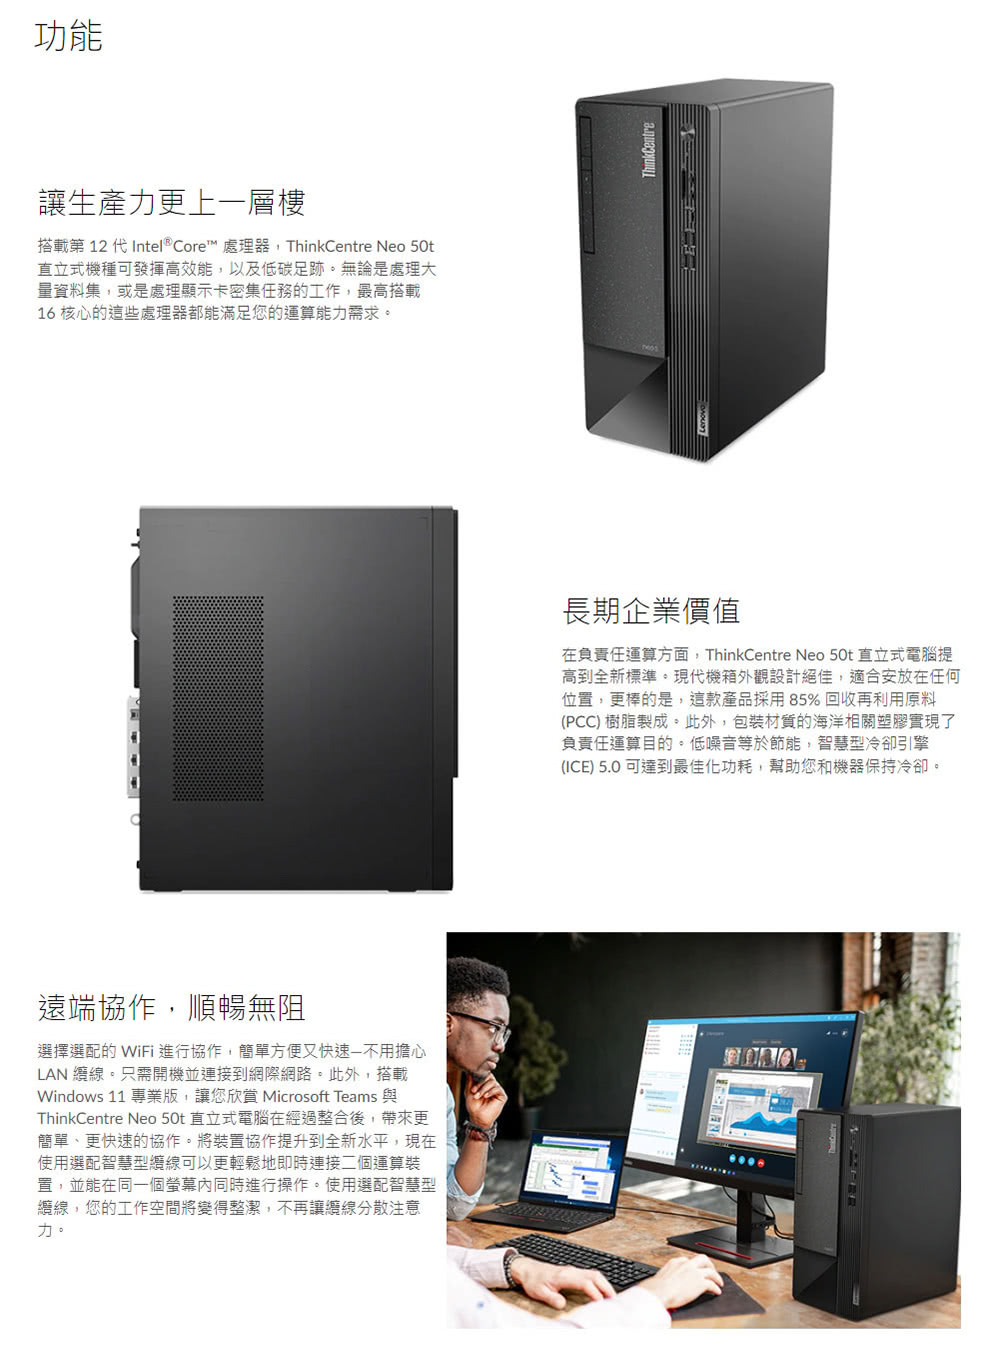 Lenovo 21.5吋螢幕組★G7400雙核商用電腦(Ne